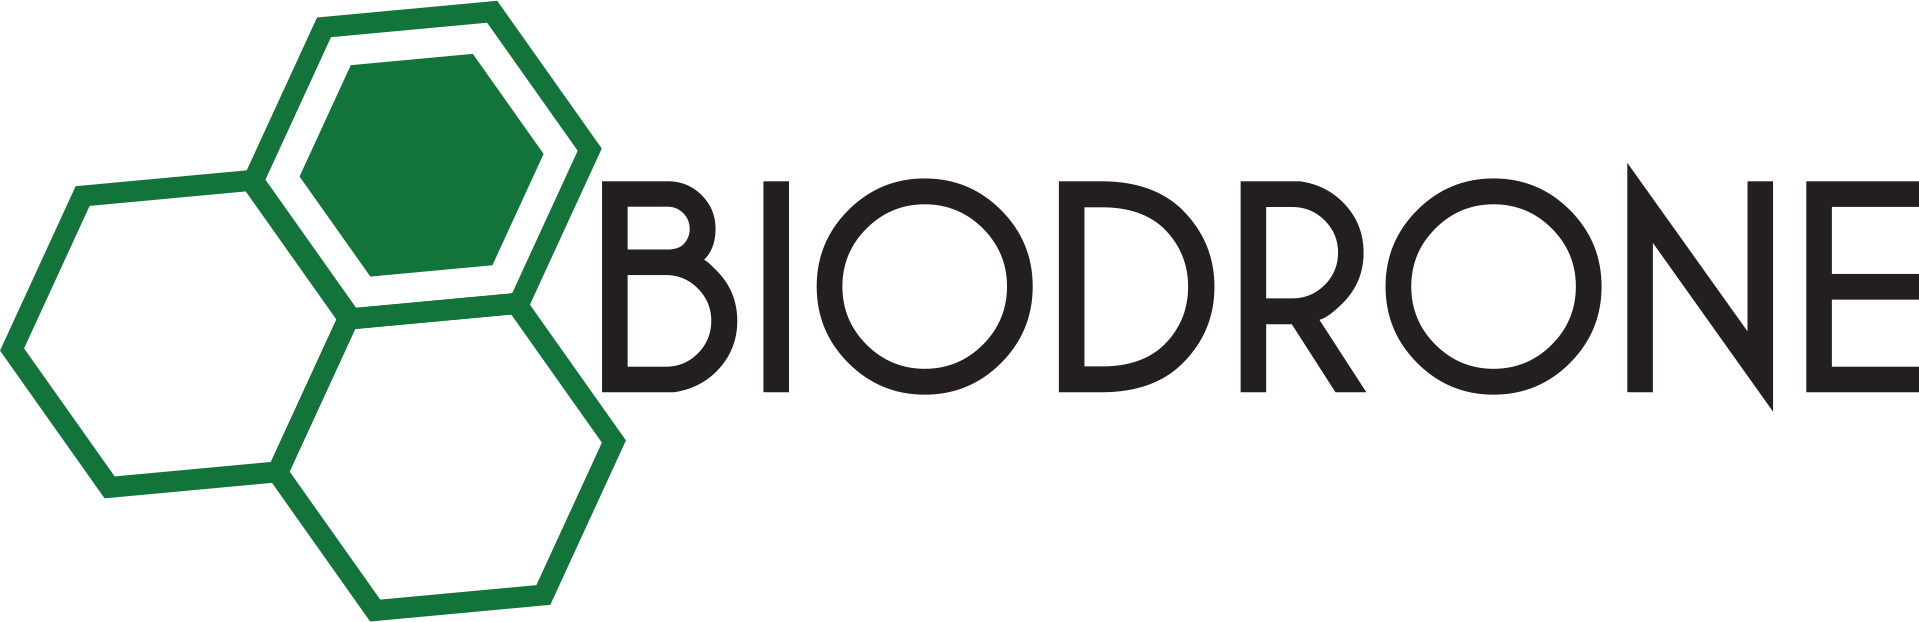 Biodrone logo orginal